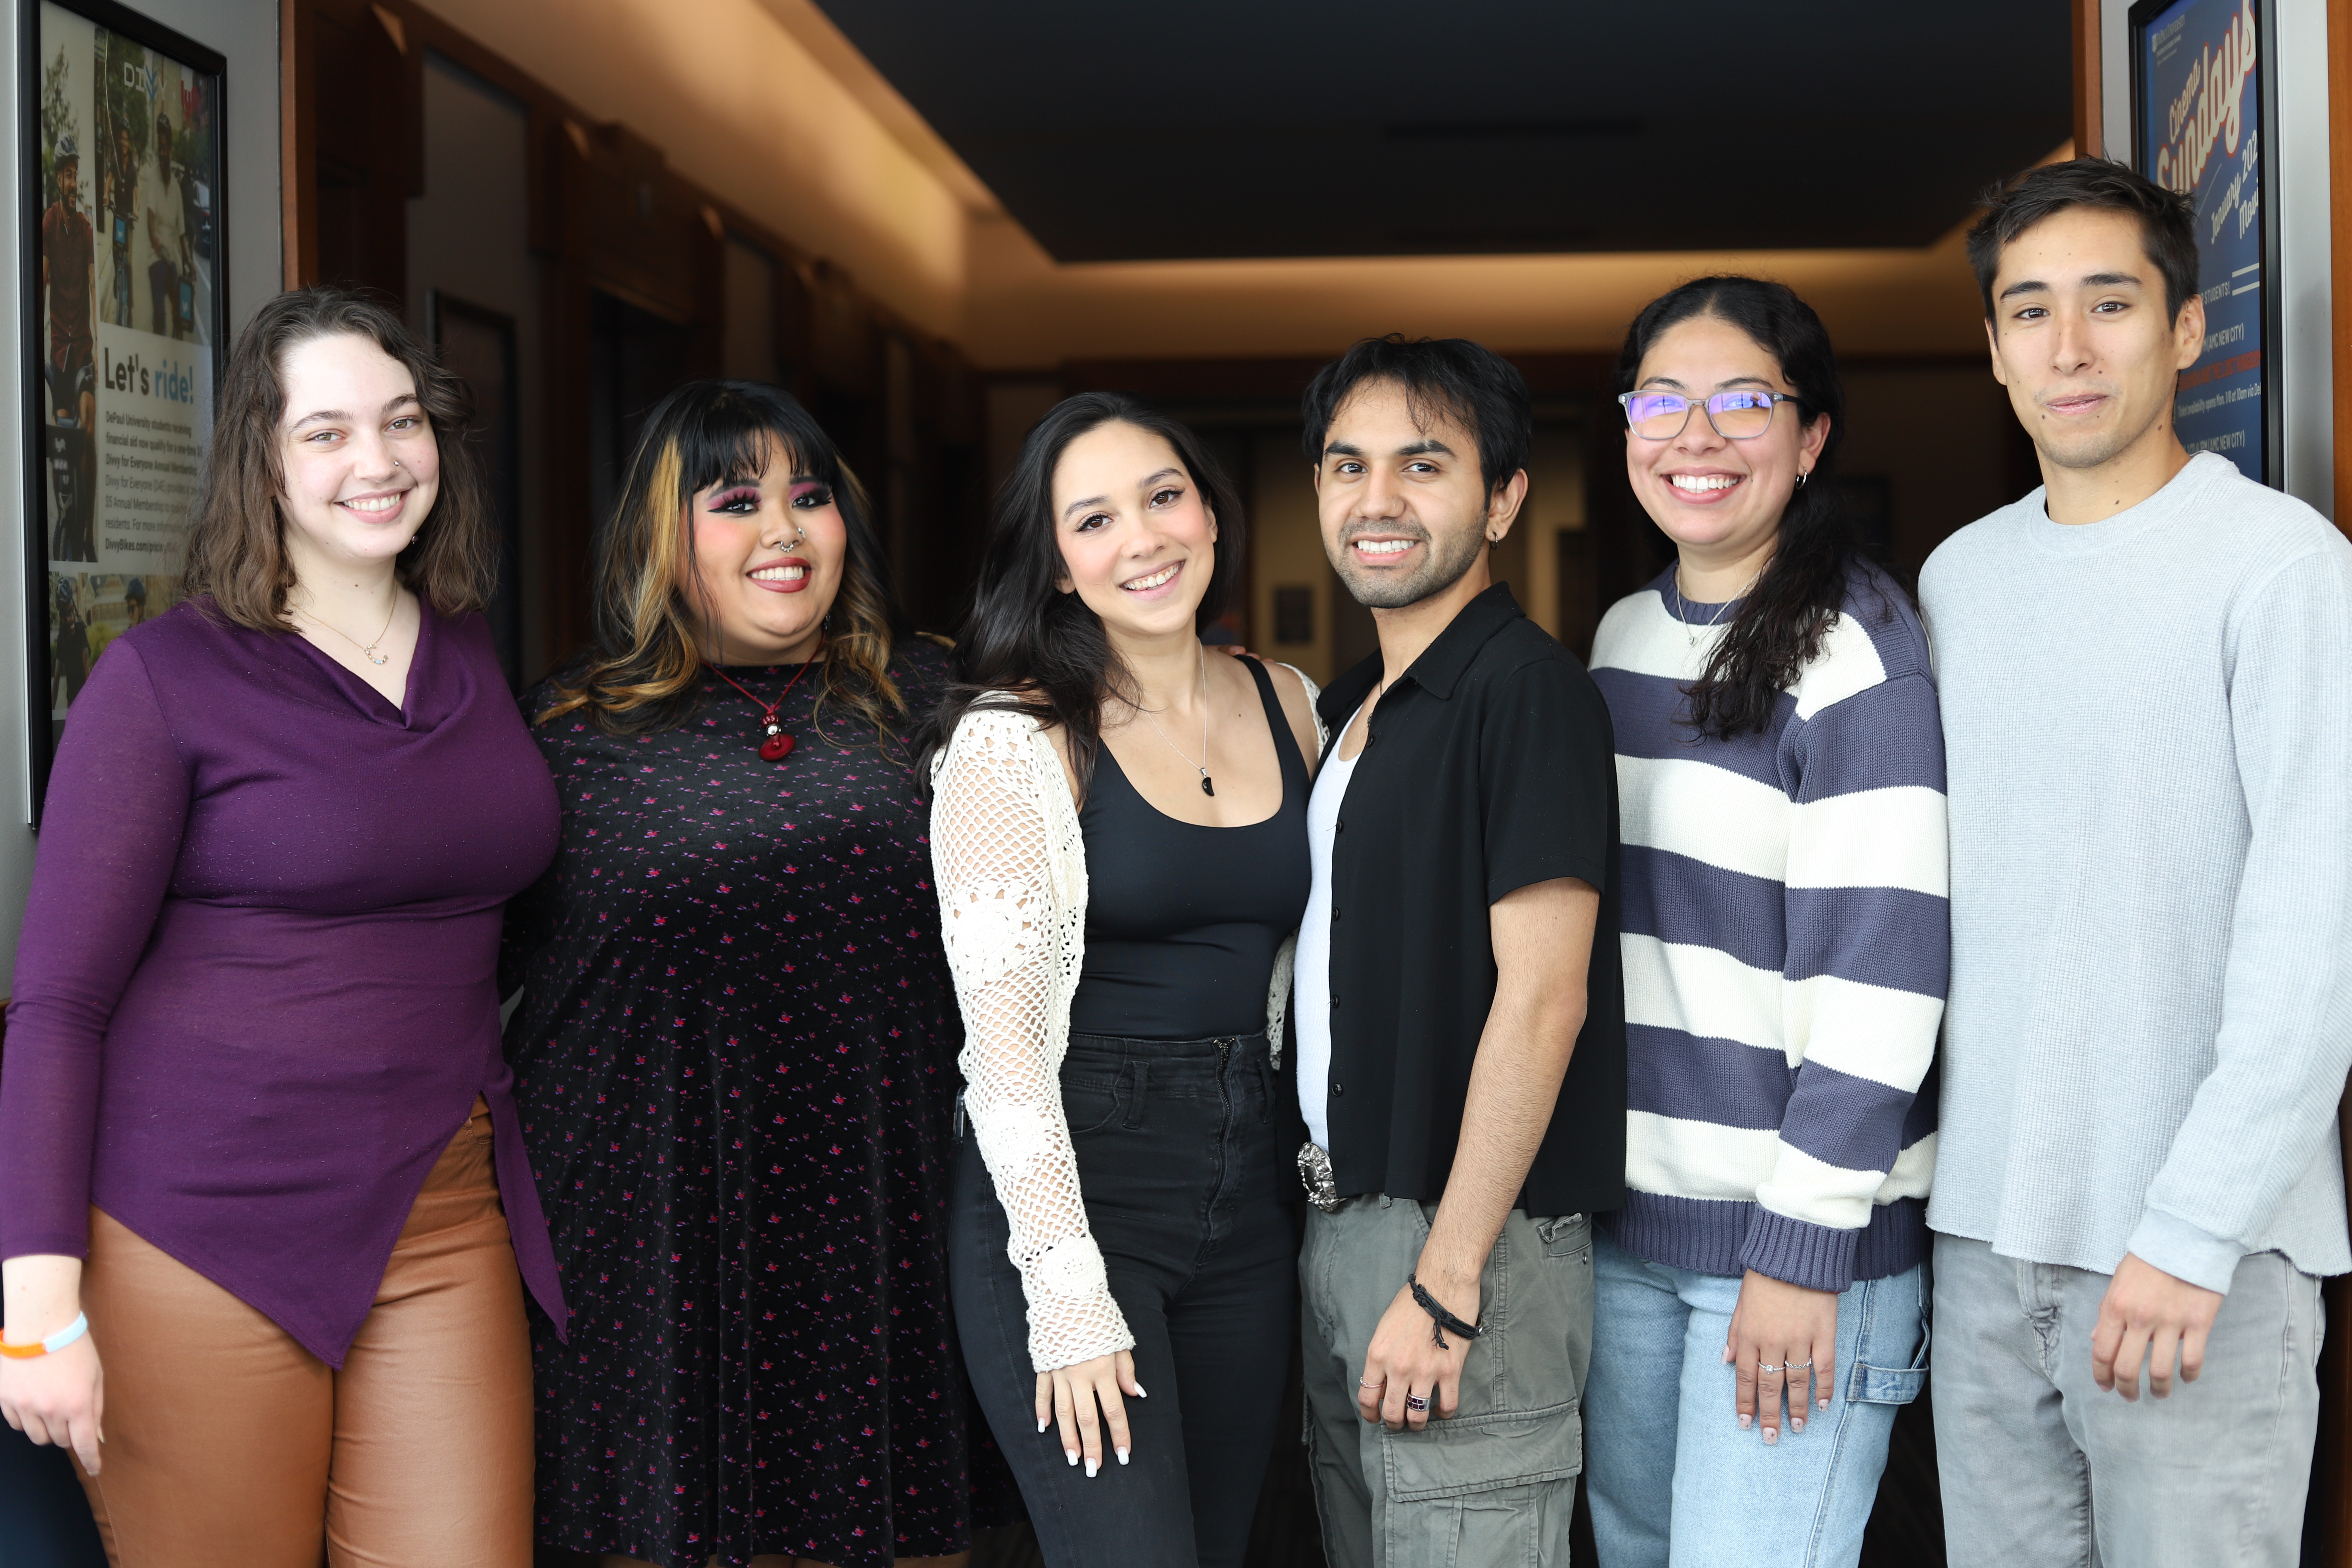 La DePaulia Staff Photo,from left to right: Cary Robbins, Emily Diaz, Alyssa Salcedo, Rodolfo Zagal, Ariana Vargas, Alonso Vidal